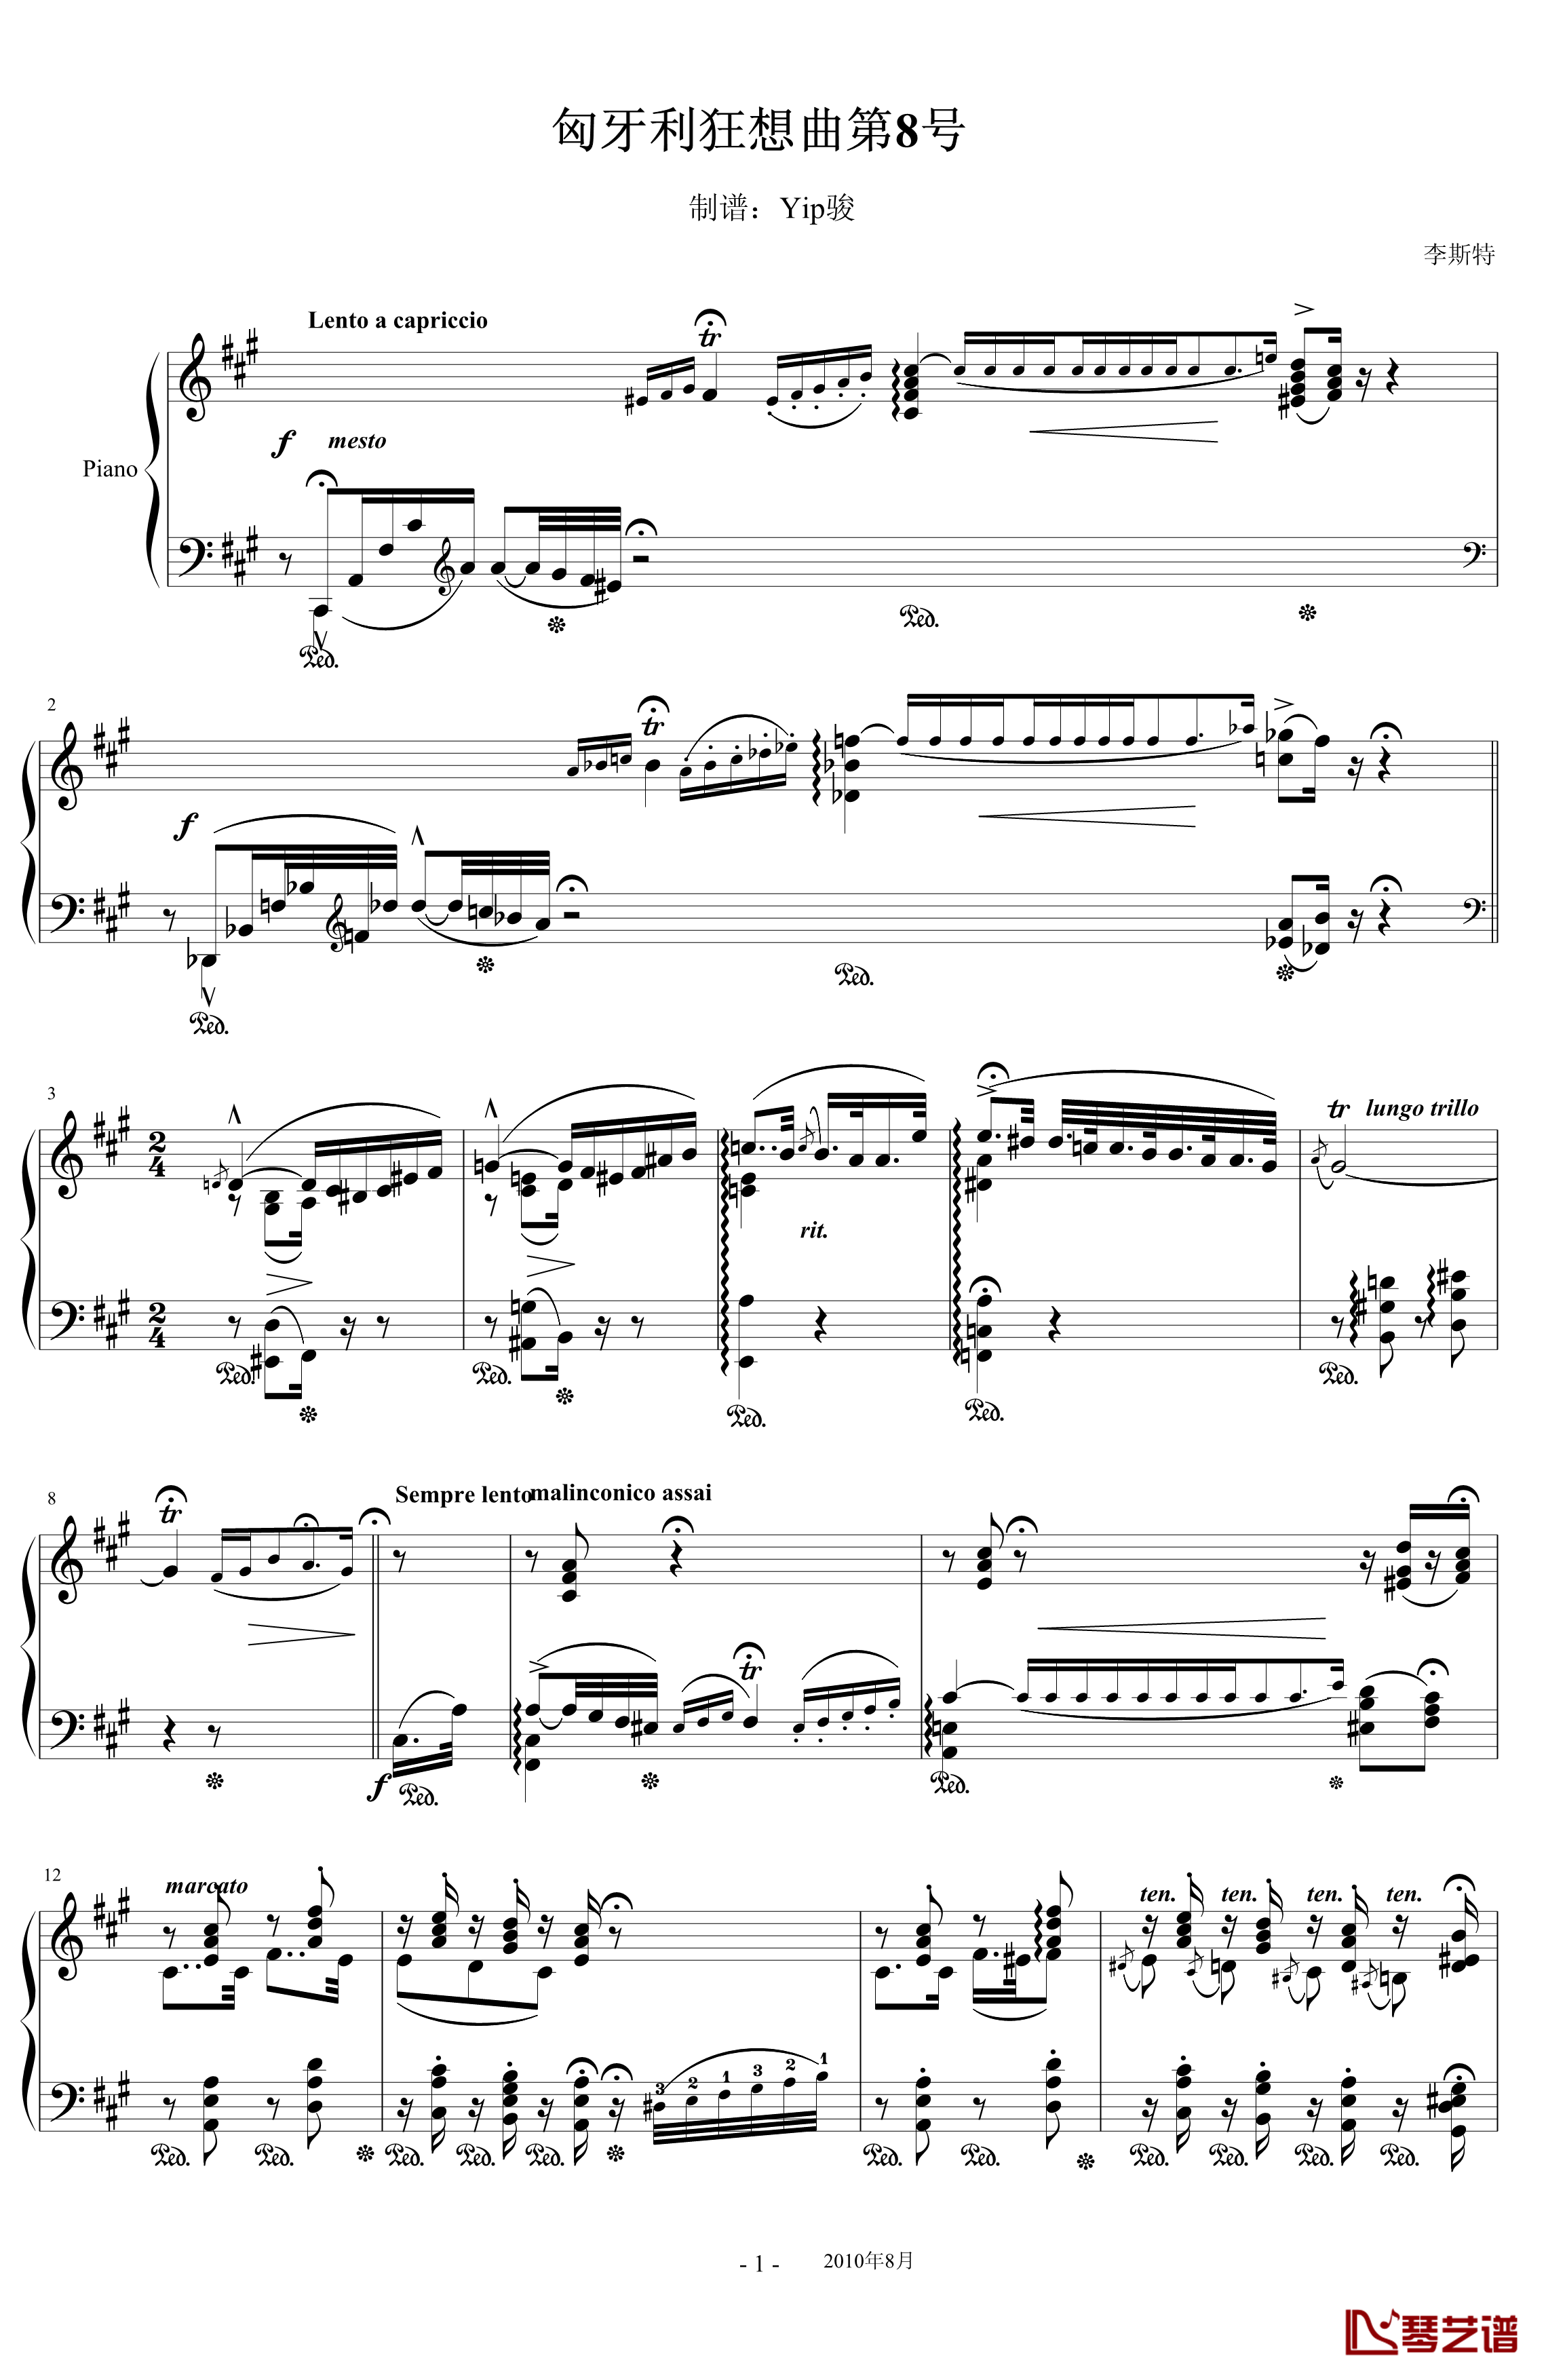 匈牙利狂想曲第8号钢琴谱-辉煌明亮的狂想曲-李斯特1